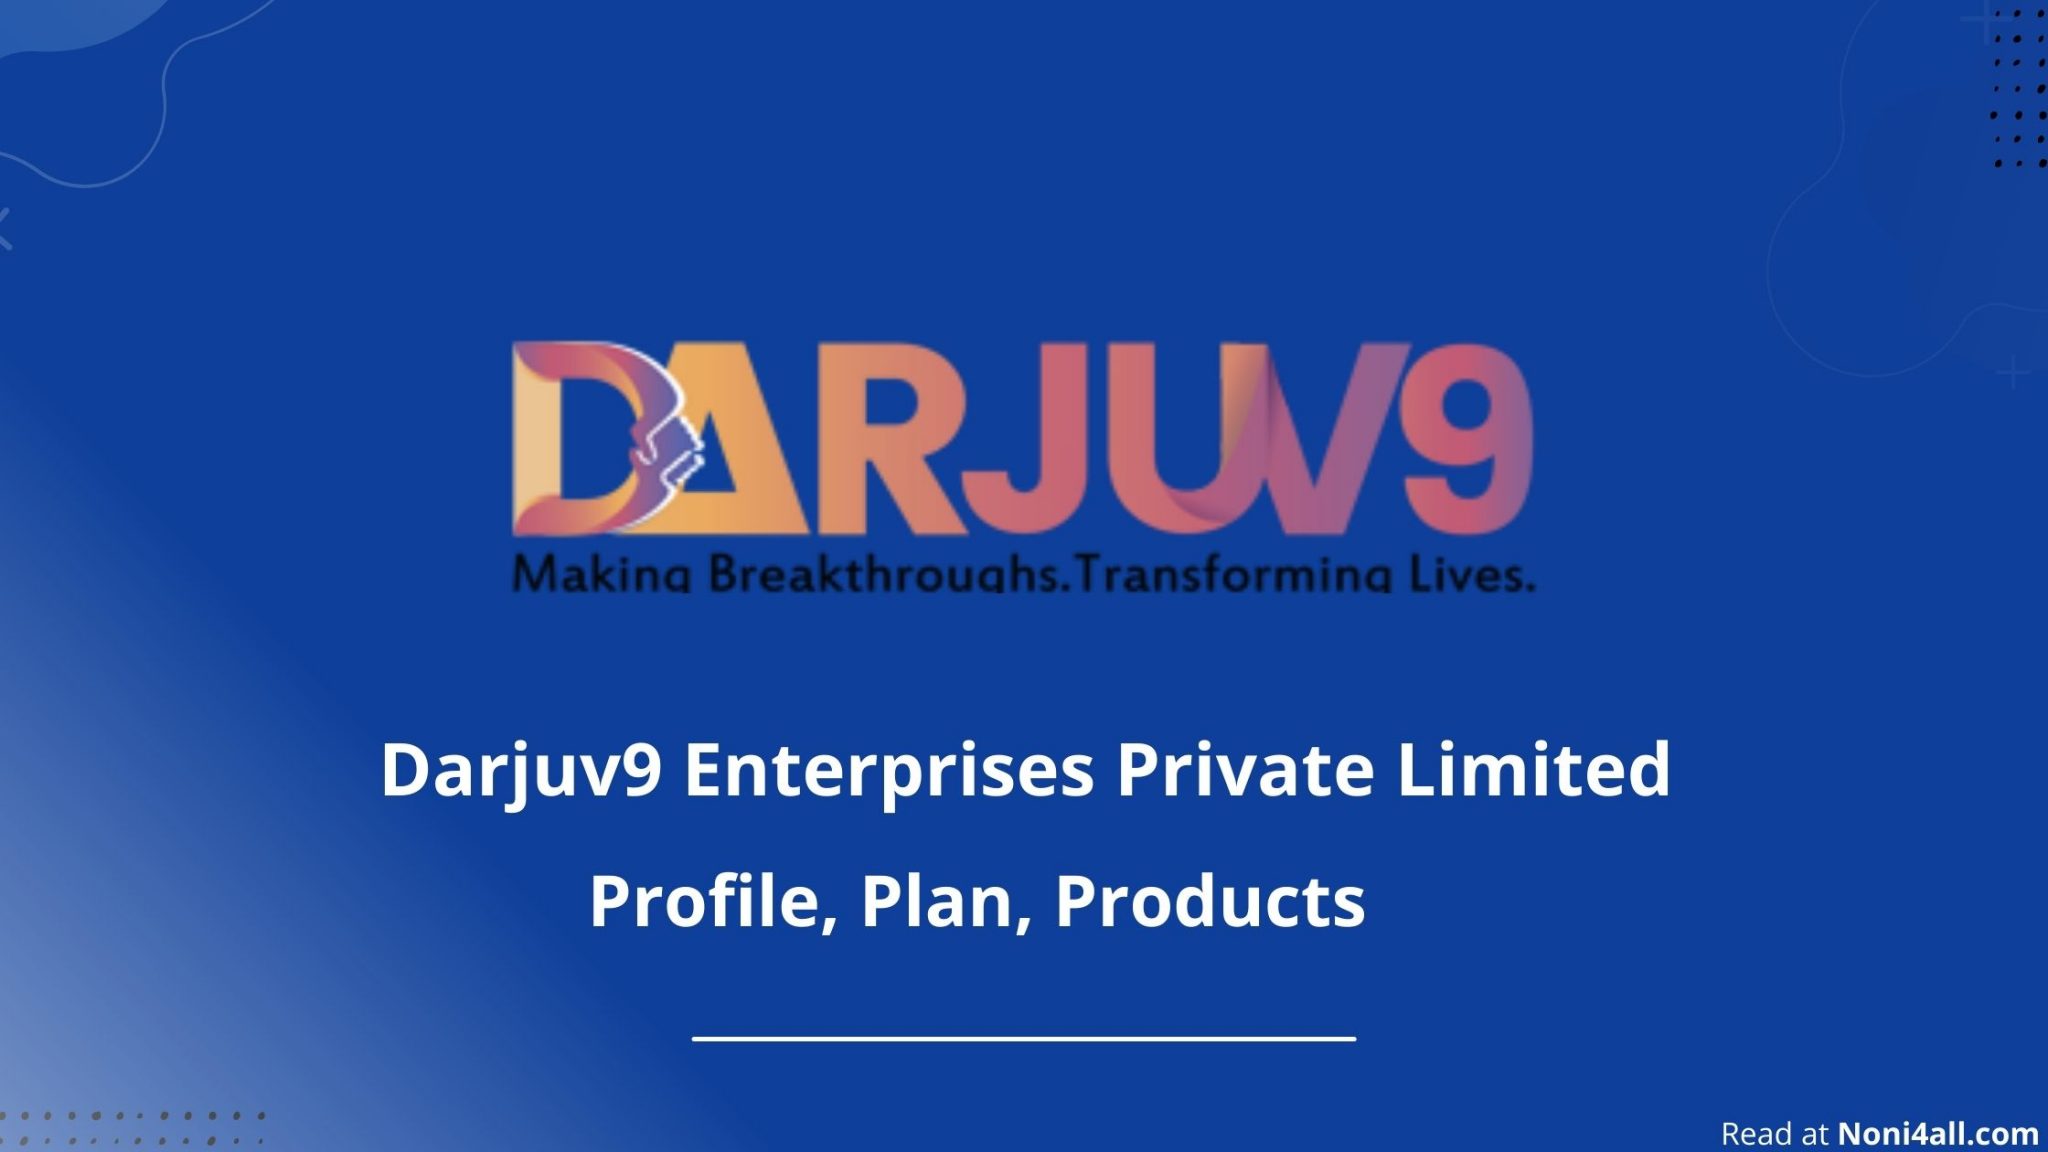 darjuv9 business plan pdf download